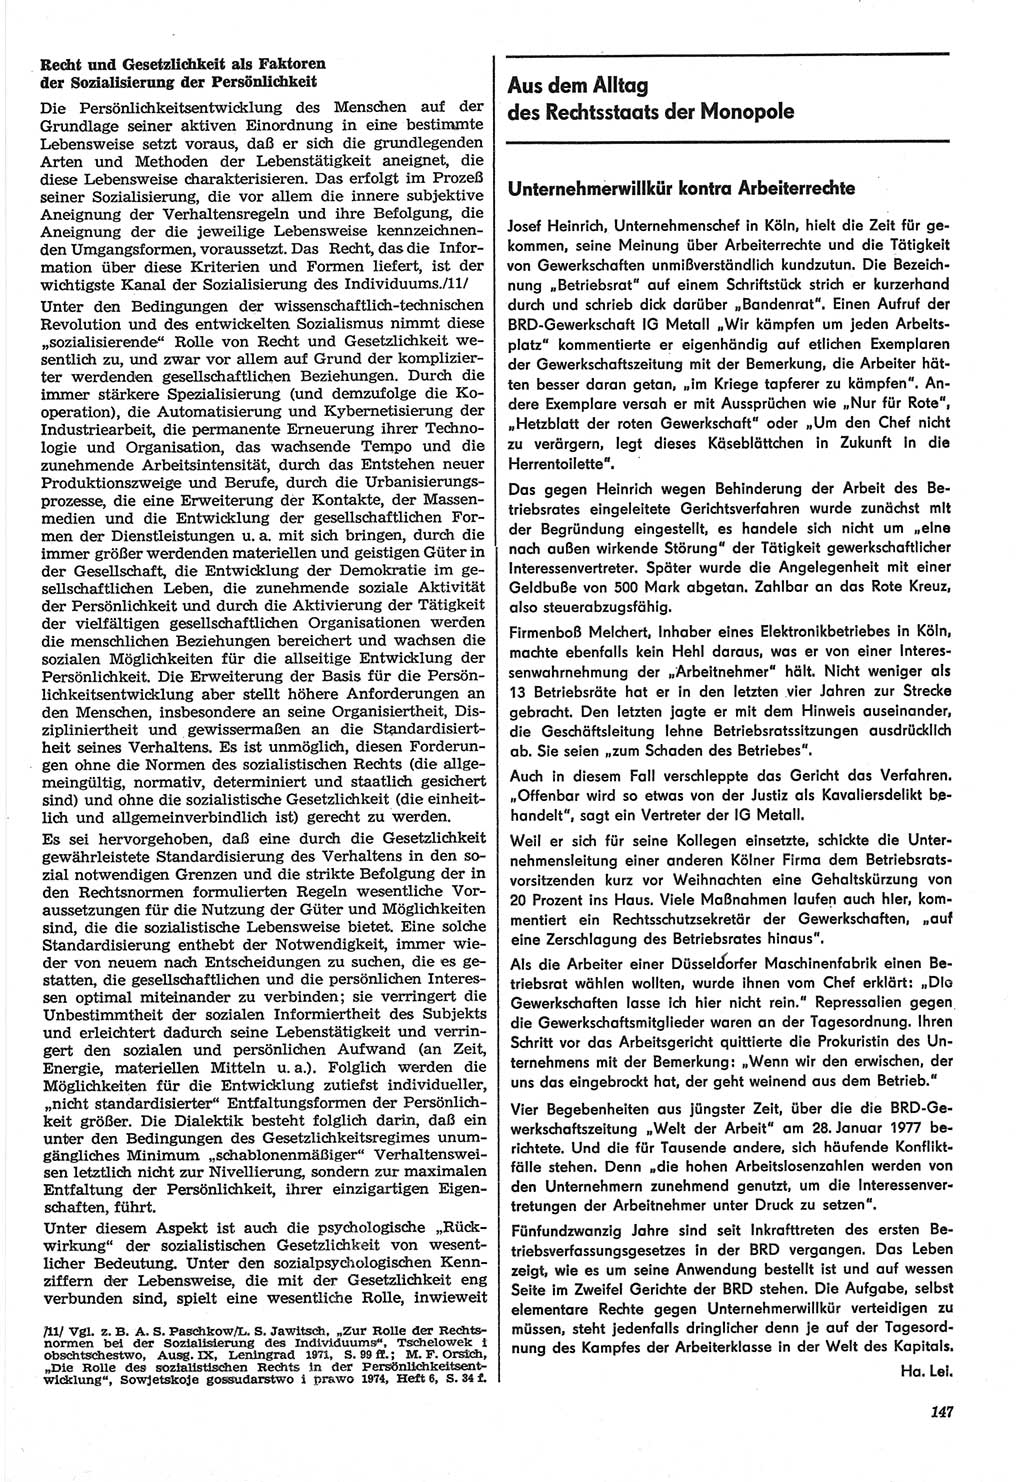 Neue Justiz (NJ), Zeitschrift für Recht und Rechtswissenschaft-Zeitschrift, sozialistisches Recht und Gesetzlichkeit, 31. Jahrgang 1977, Seite 147 (NJ DDR 1977, S. 147)